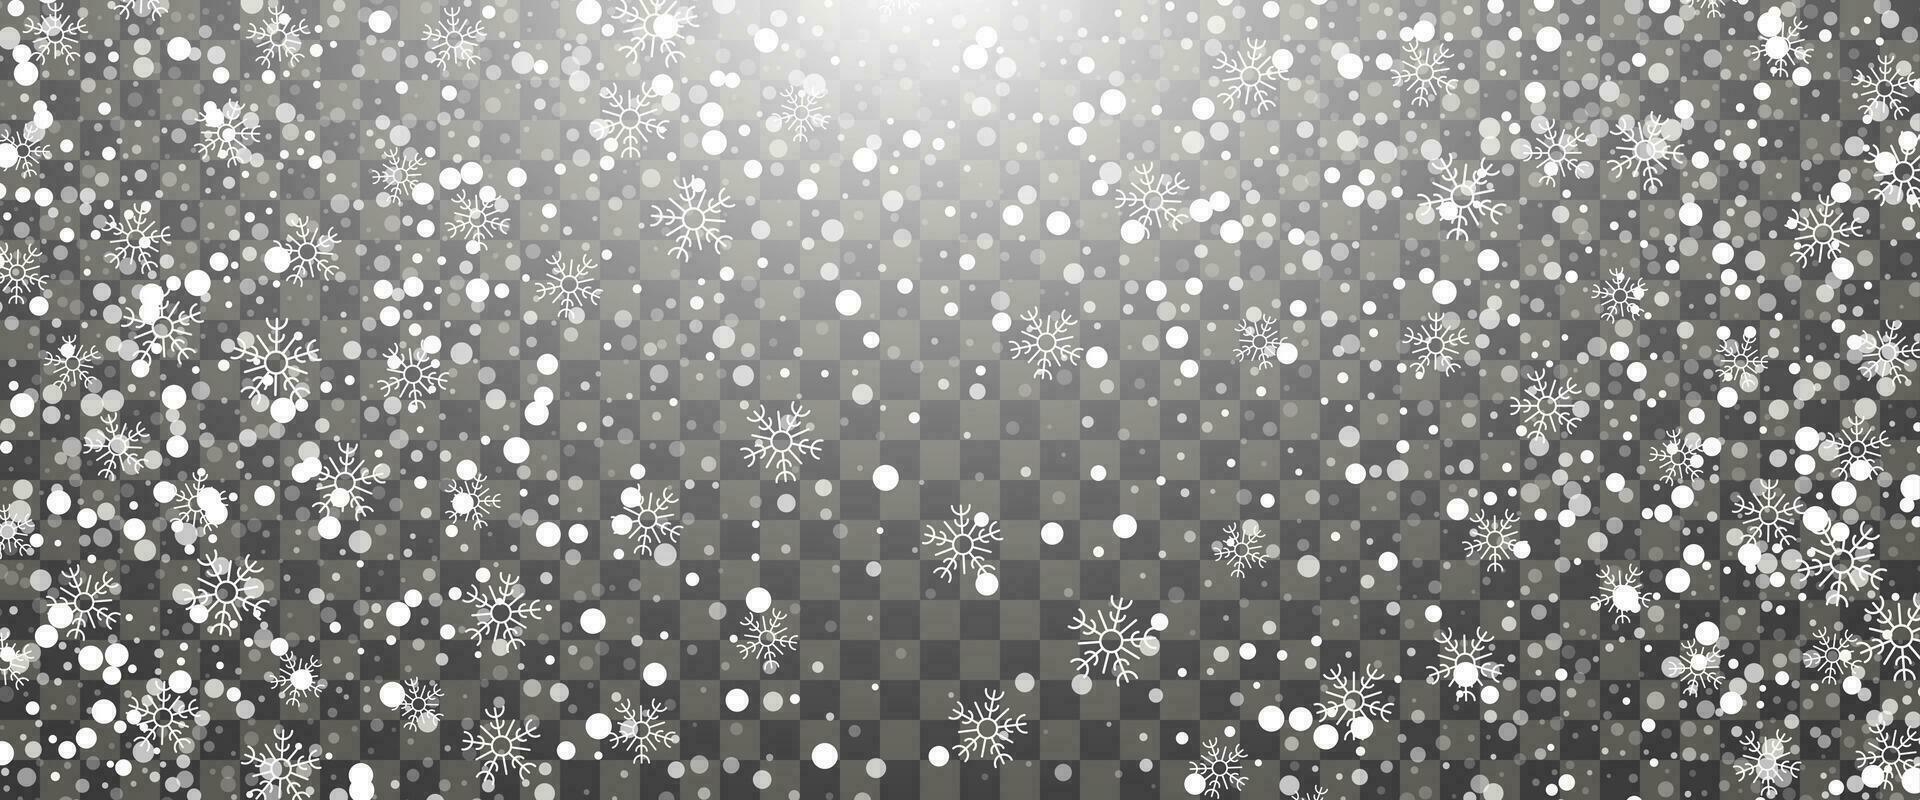 nevicata e caduta i fiocchi di neve su sfondo. bianca i fiocchi di neve e Natale neve. vettore illustrazione